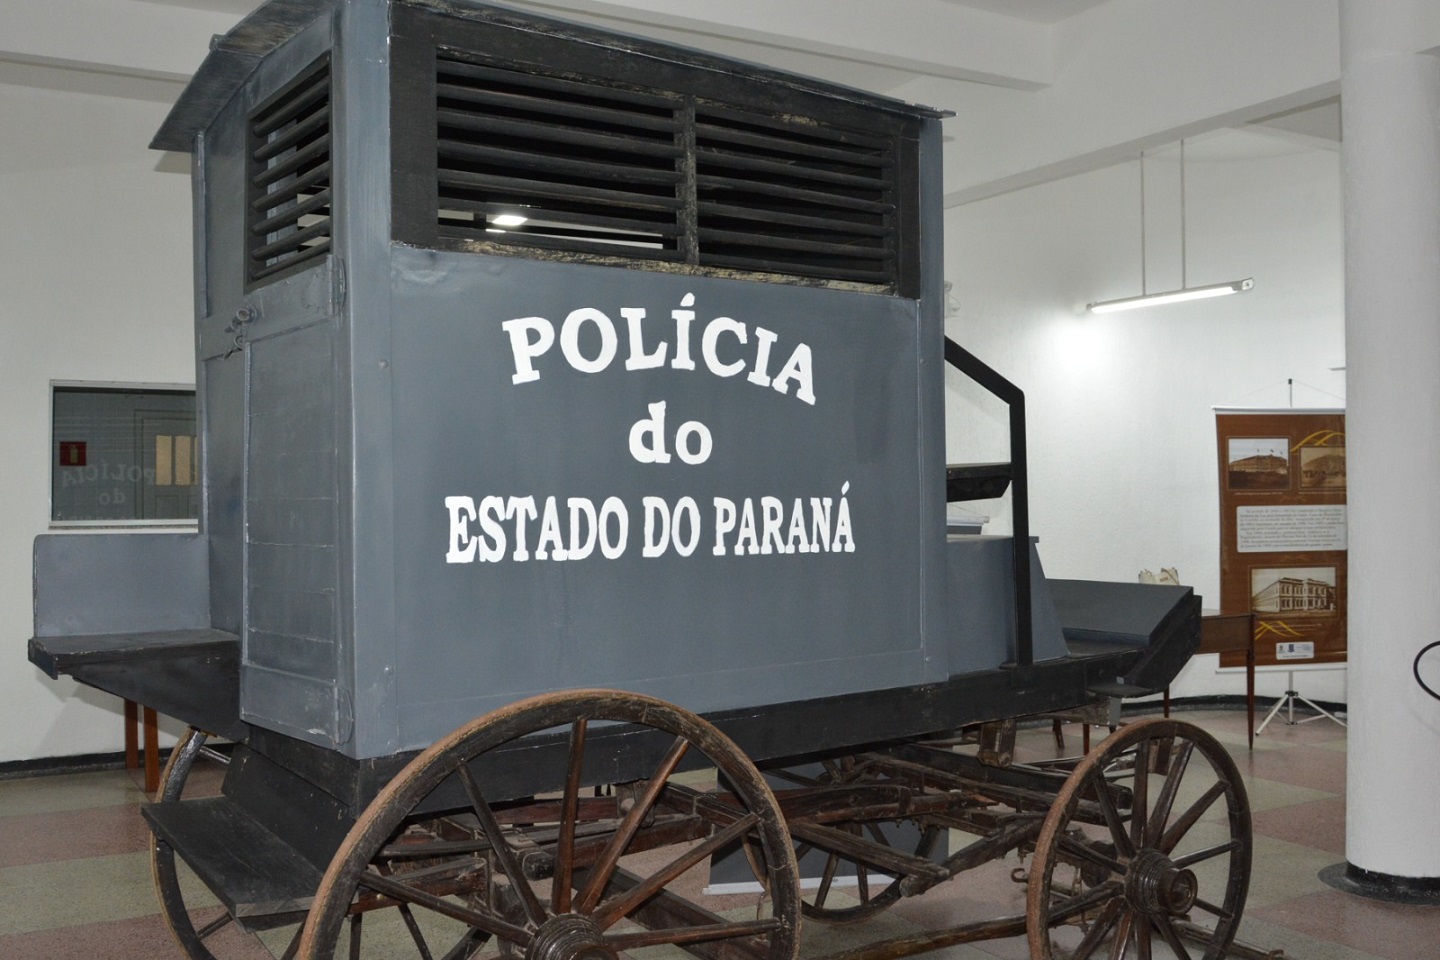 Museu Penitenciário da Polícia Penal reabre as portas para visitação do público